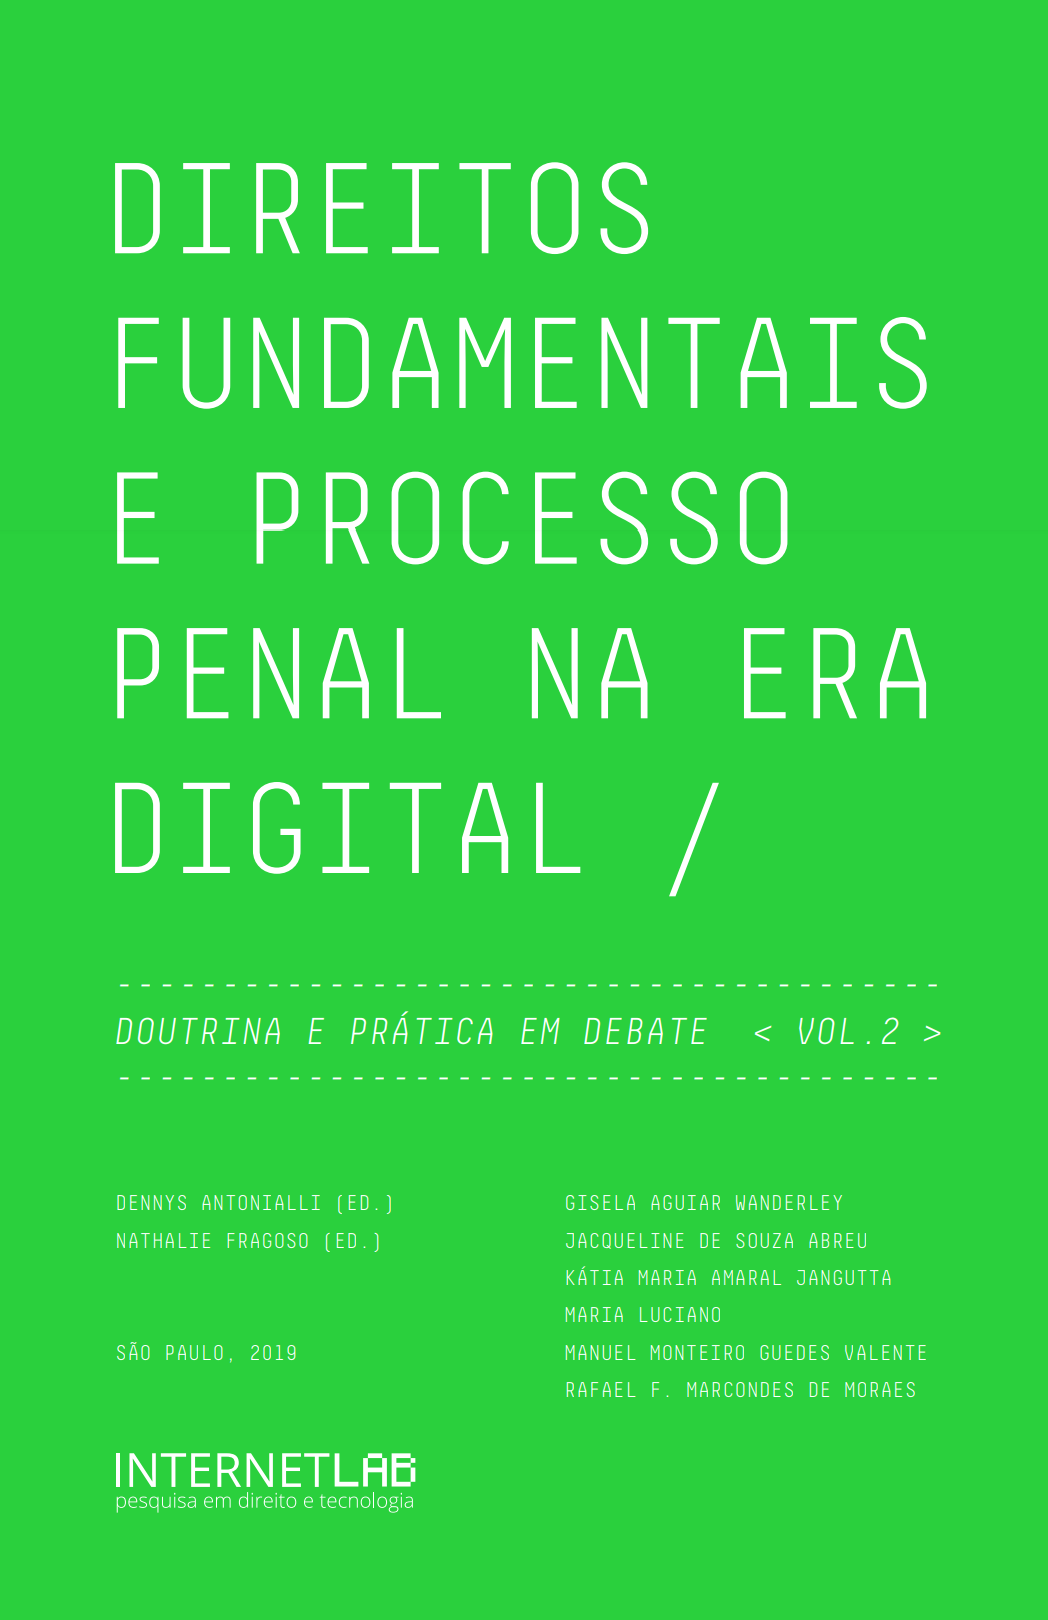 Capa do livro "Direitos fundamentais e processo penal na era digital".